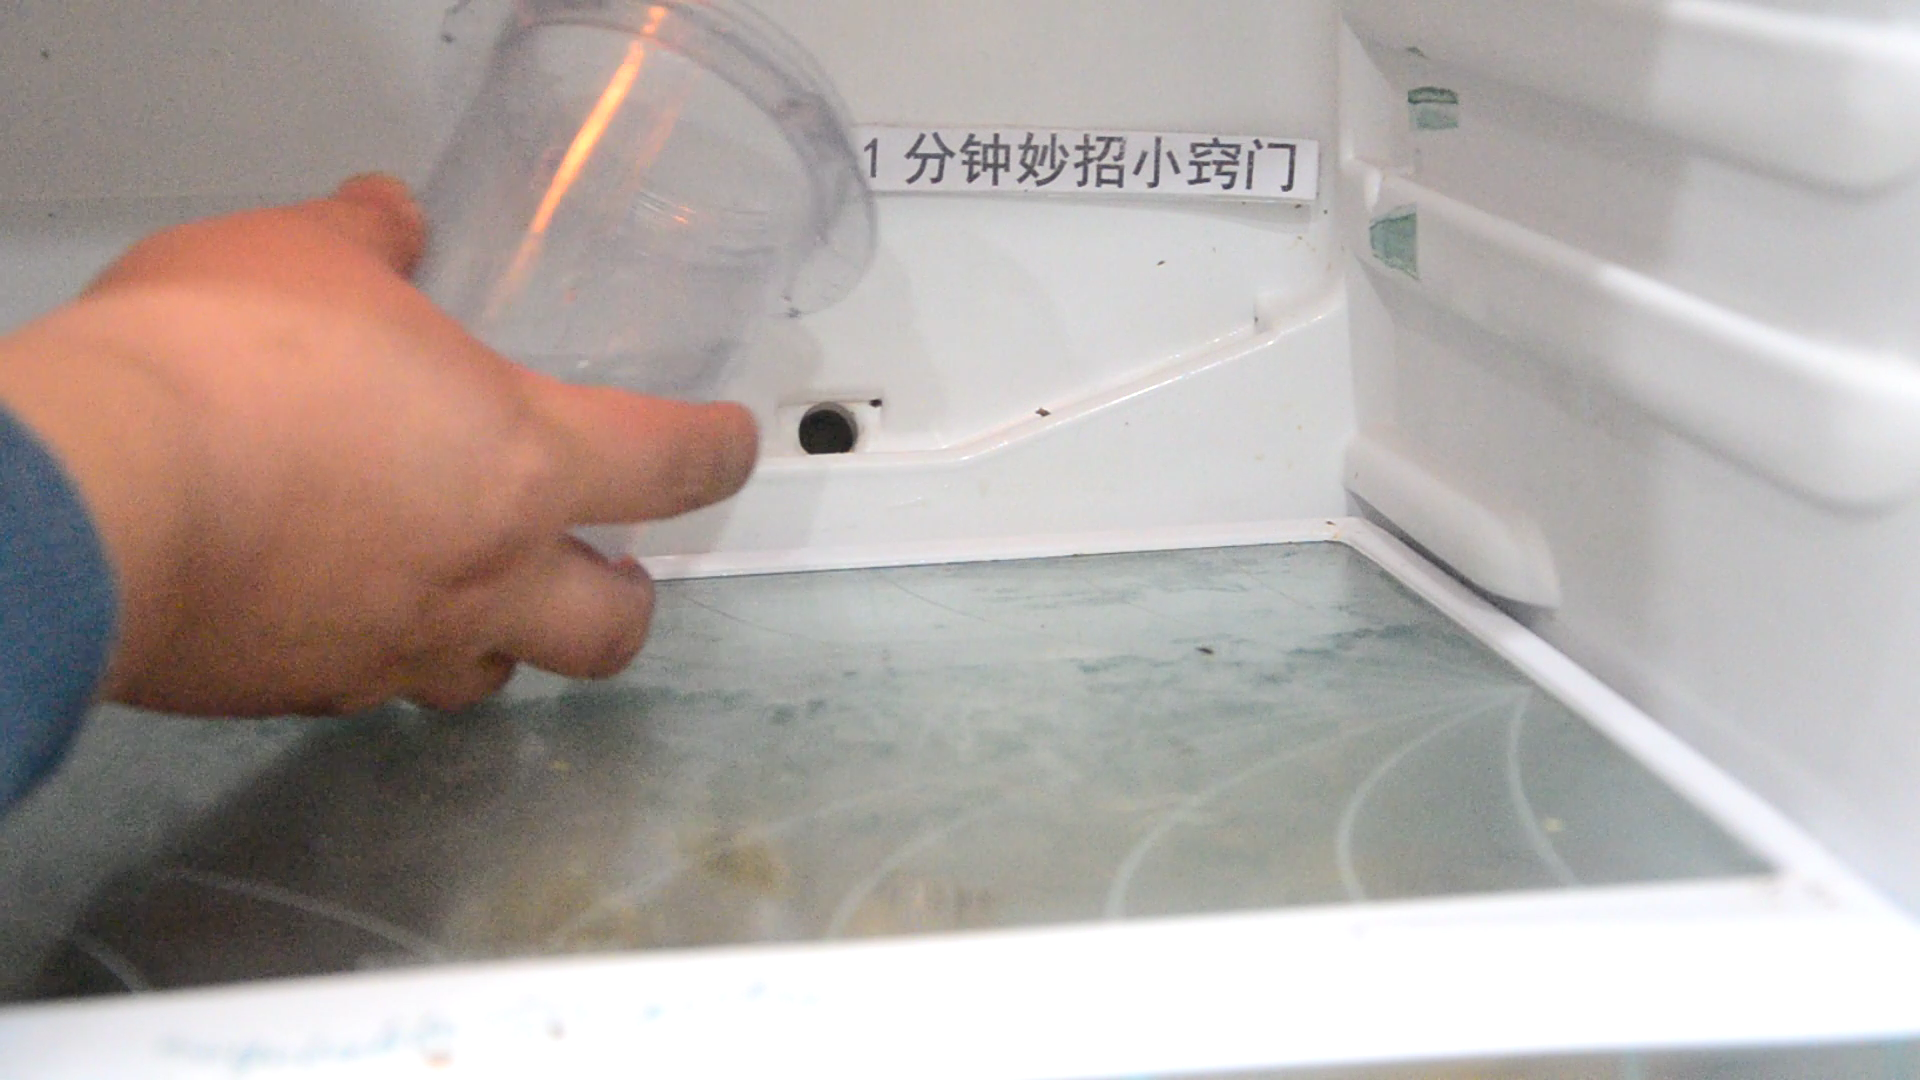 美菱冰箱排水孔在哪里图片